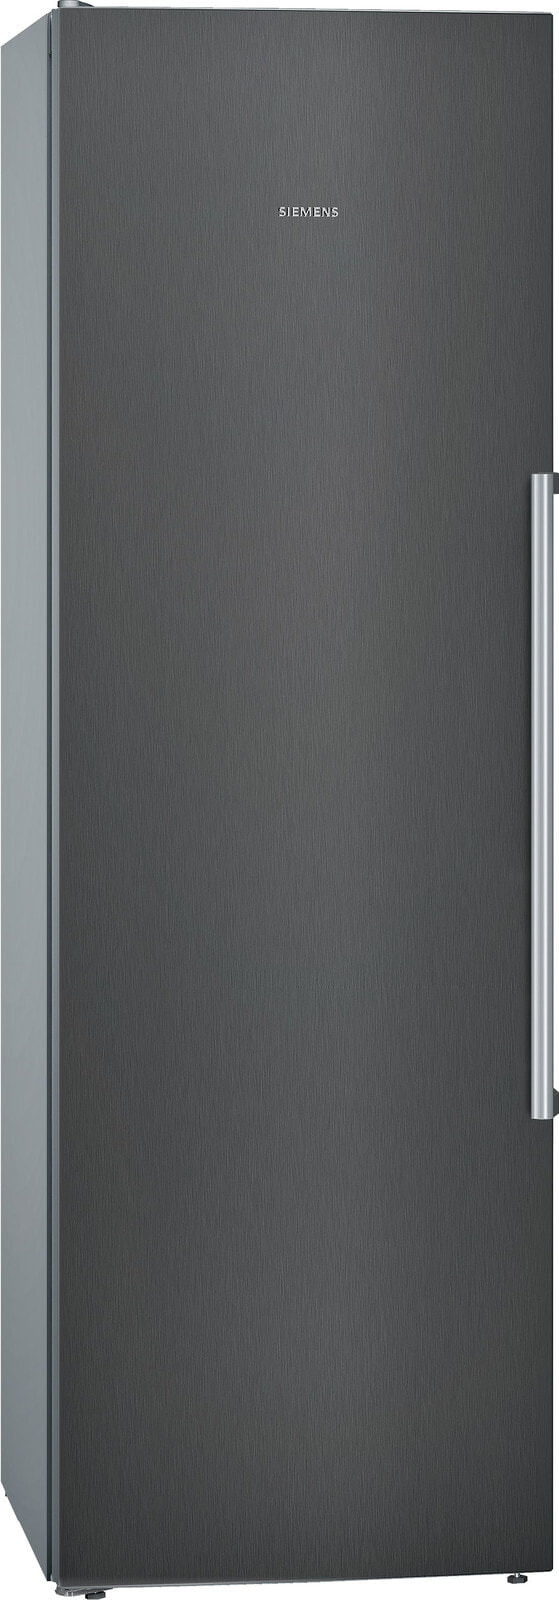 Siemens iQ500 KS36VAXEP холодильник Отдельно стоящий Черный 346 L A++